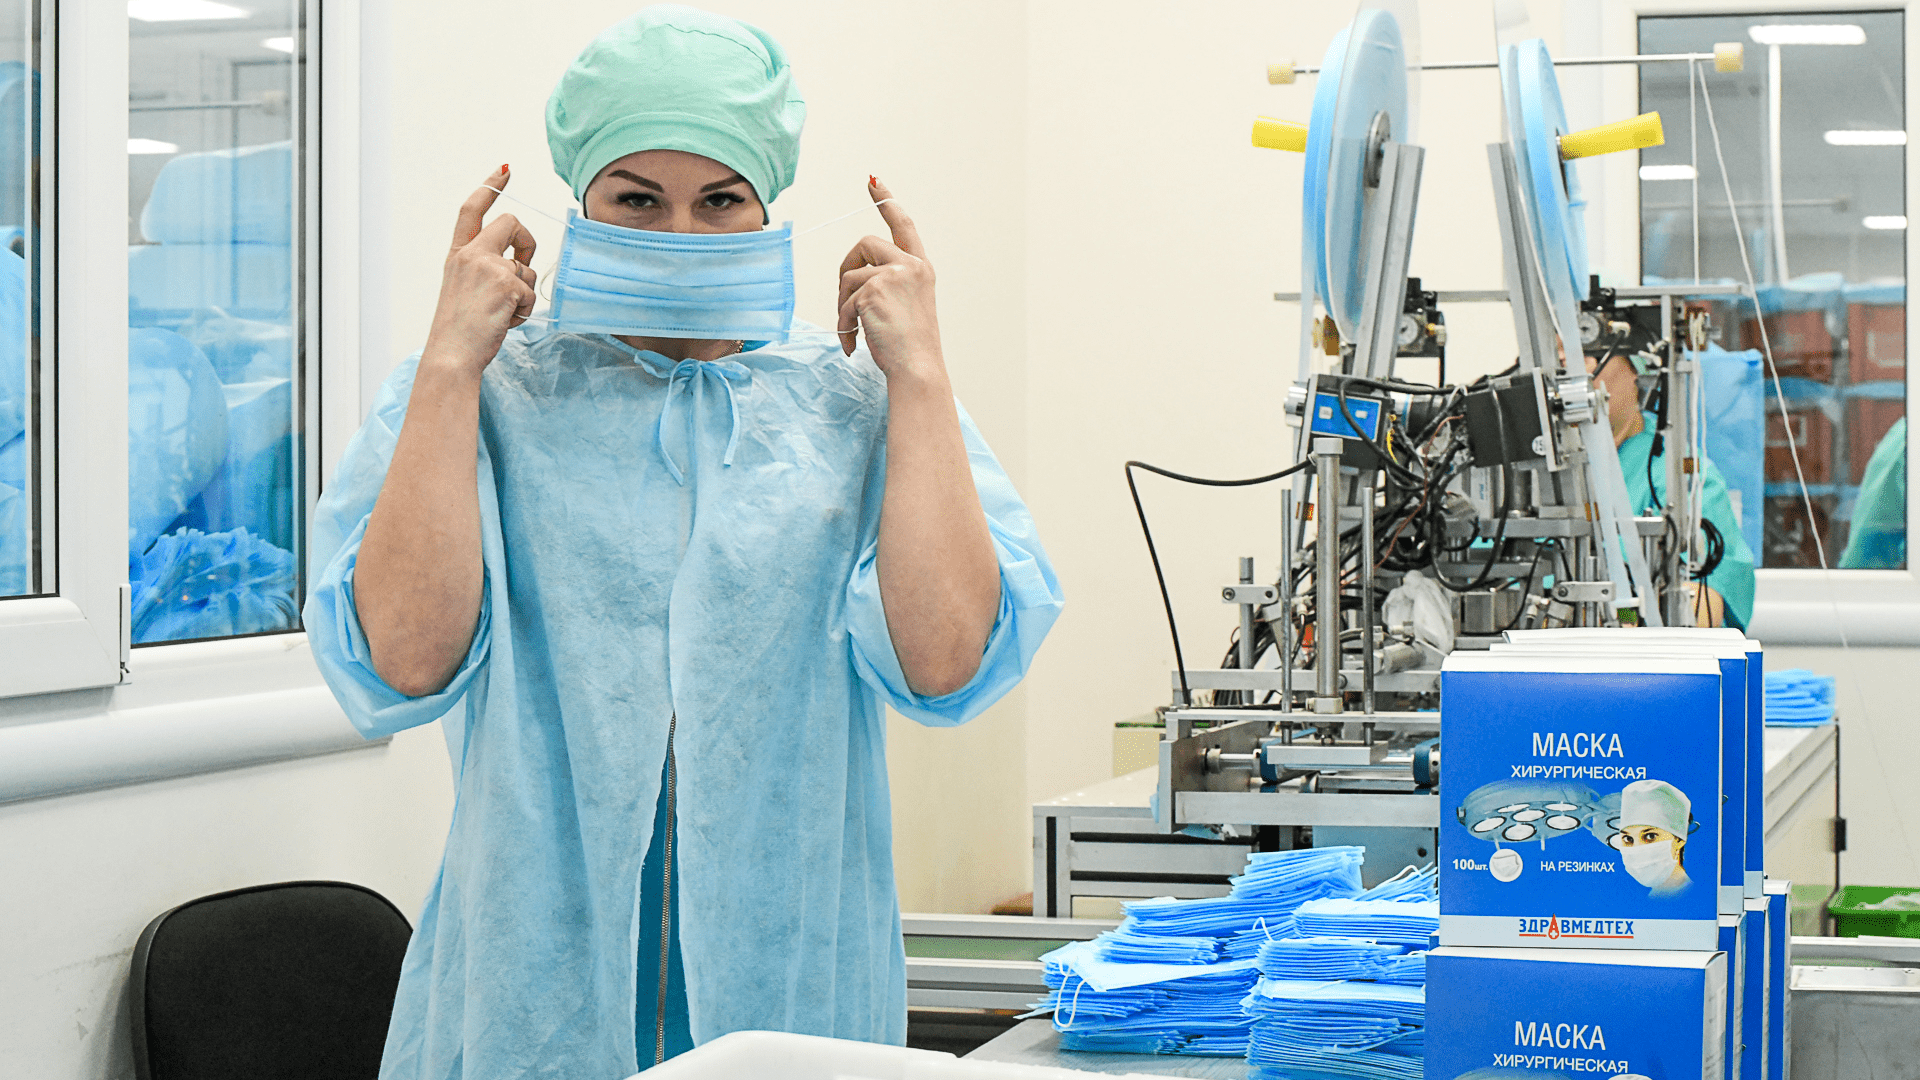 Стали работать круглосуточно: как небольшой завод на Урале делает миллион медицинских масок